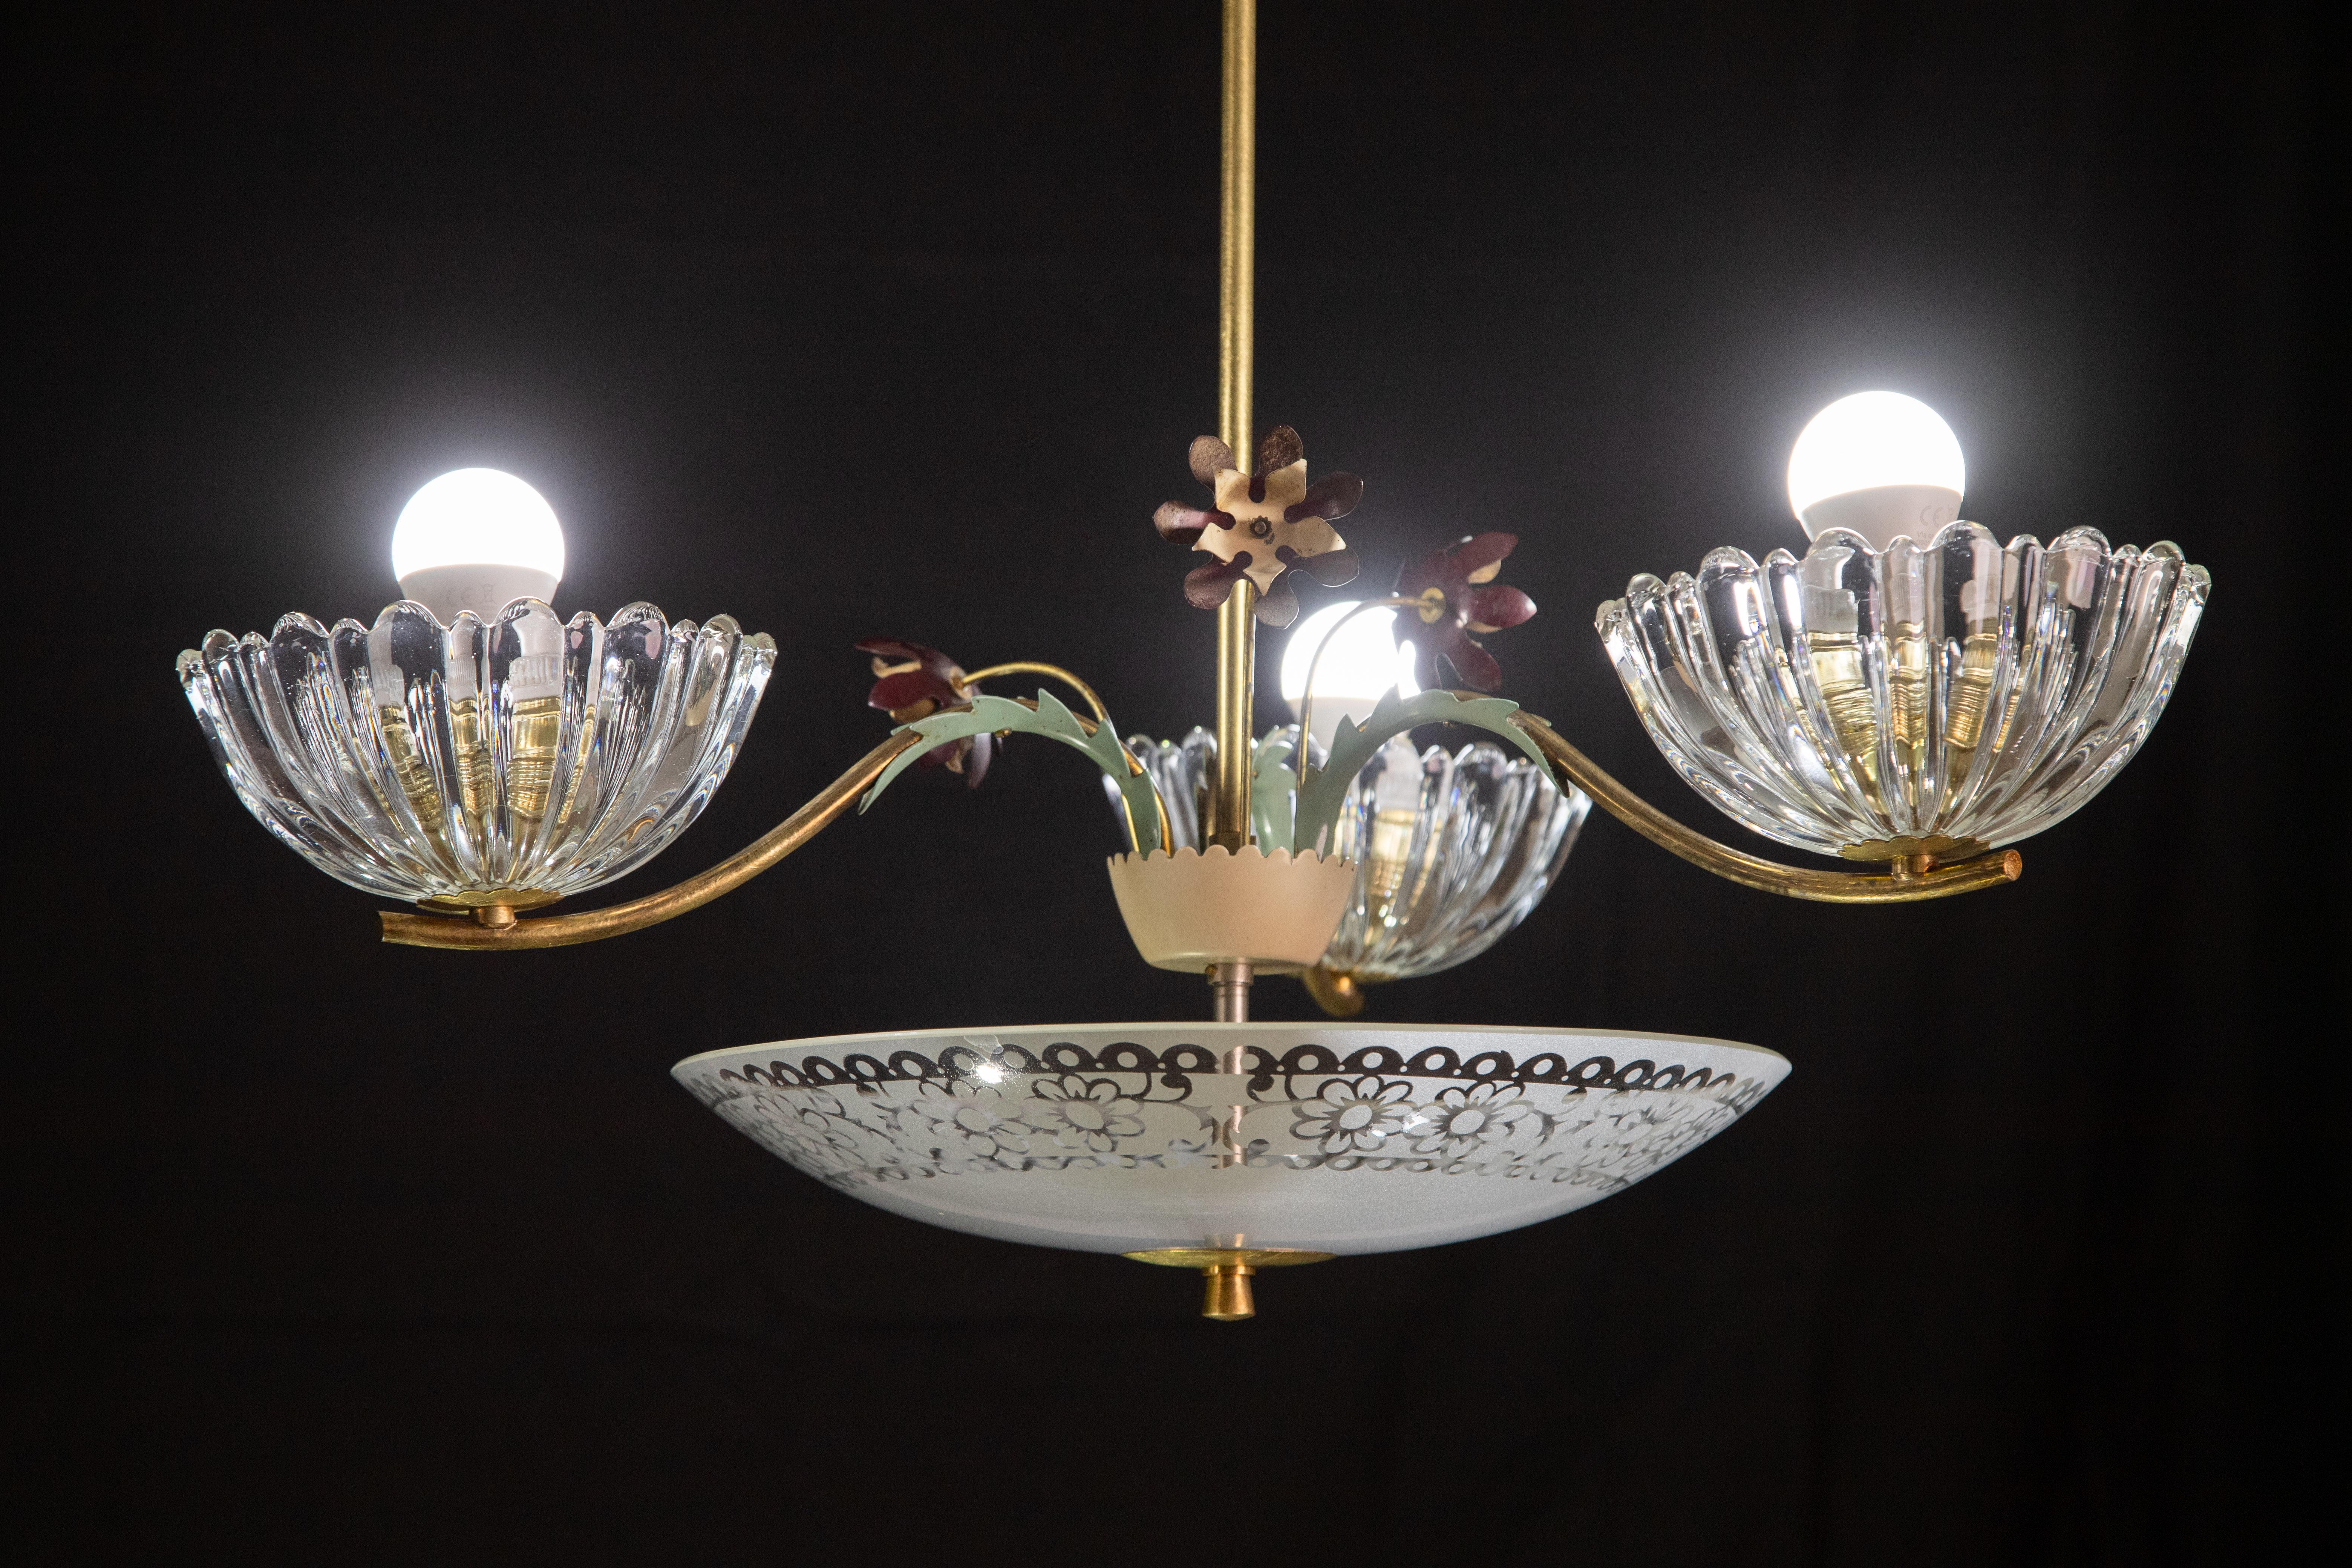 Wunderschöner Kronleuchter aus Murano-Glas und Messing aus den 1950er Jahren.

Der Kronleuchter besteht aus drei Glasschalen und einer Glasscheibe darunter, einem Messingrahmen, der mit drei Messingblumen verziert ist.

Er nimmt drei e27-Leuchten